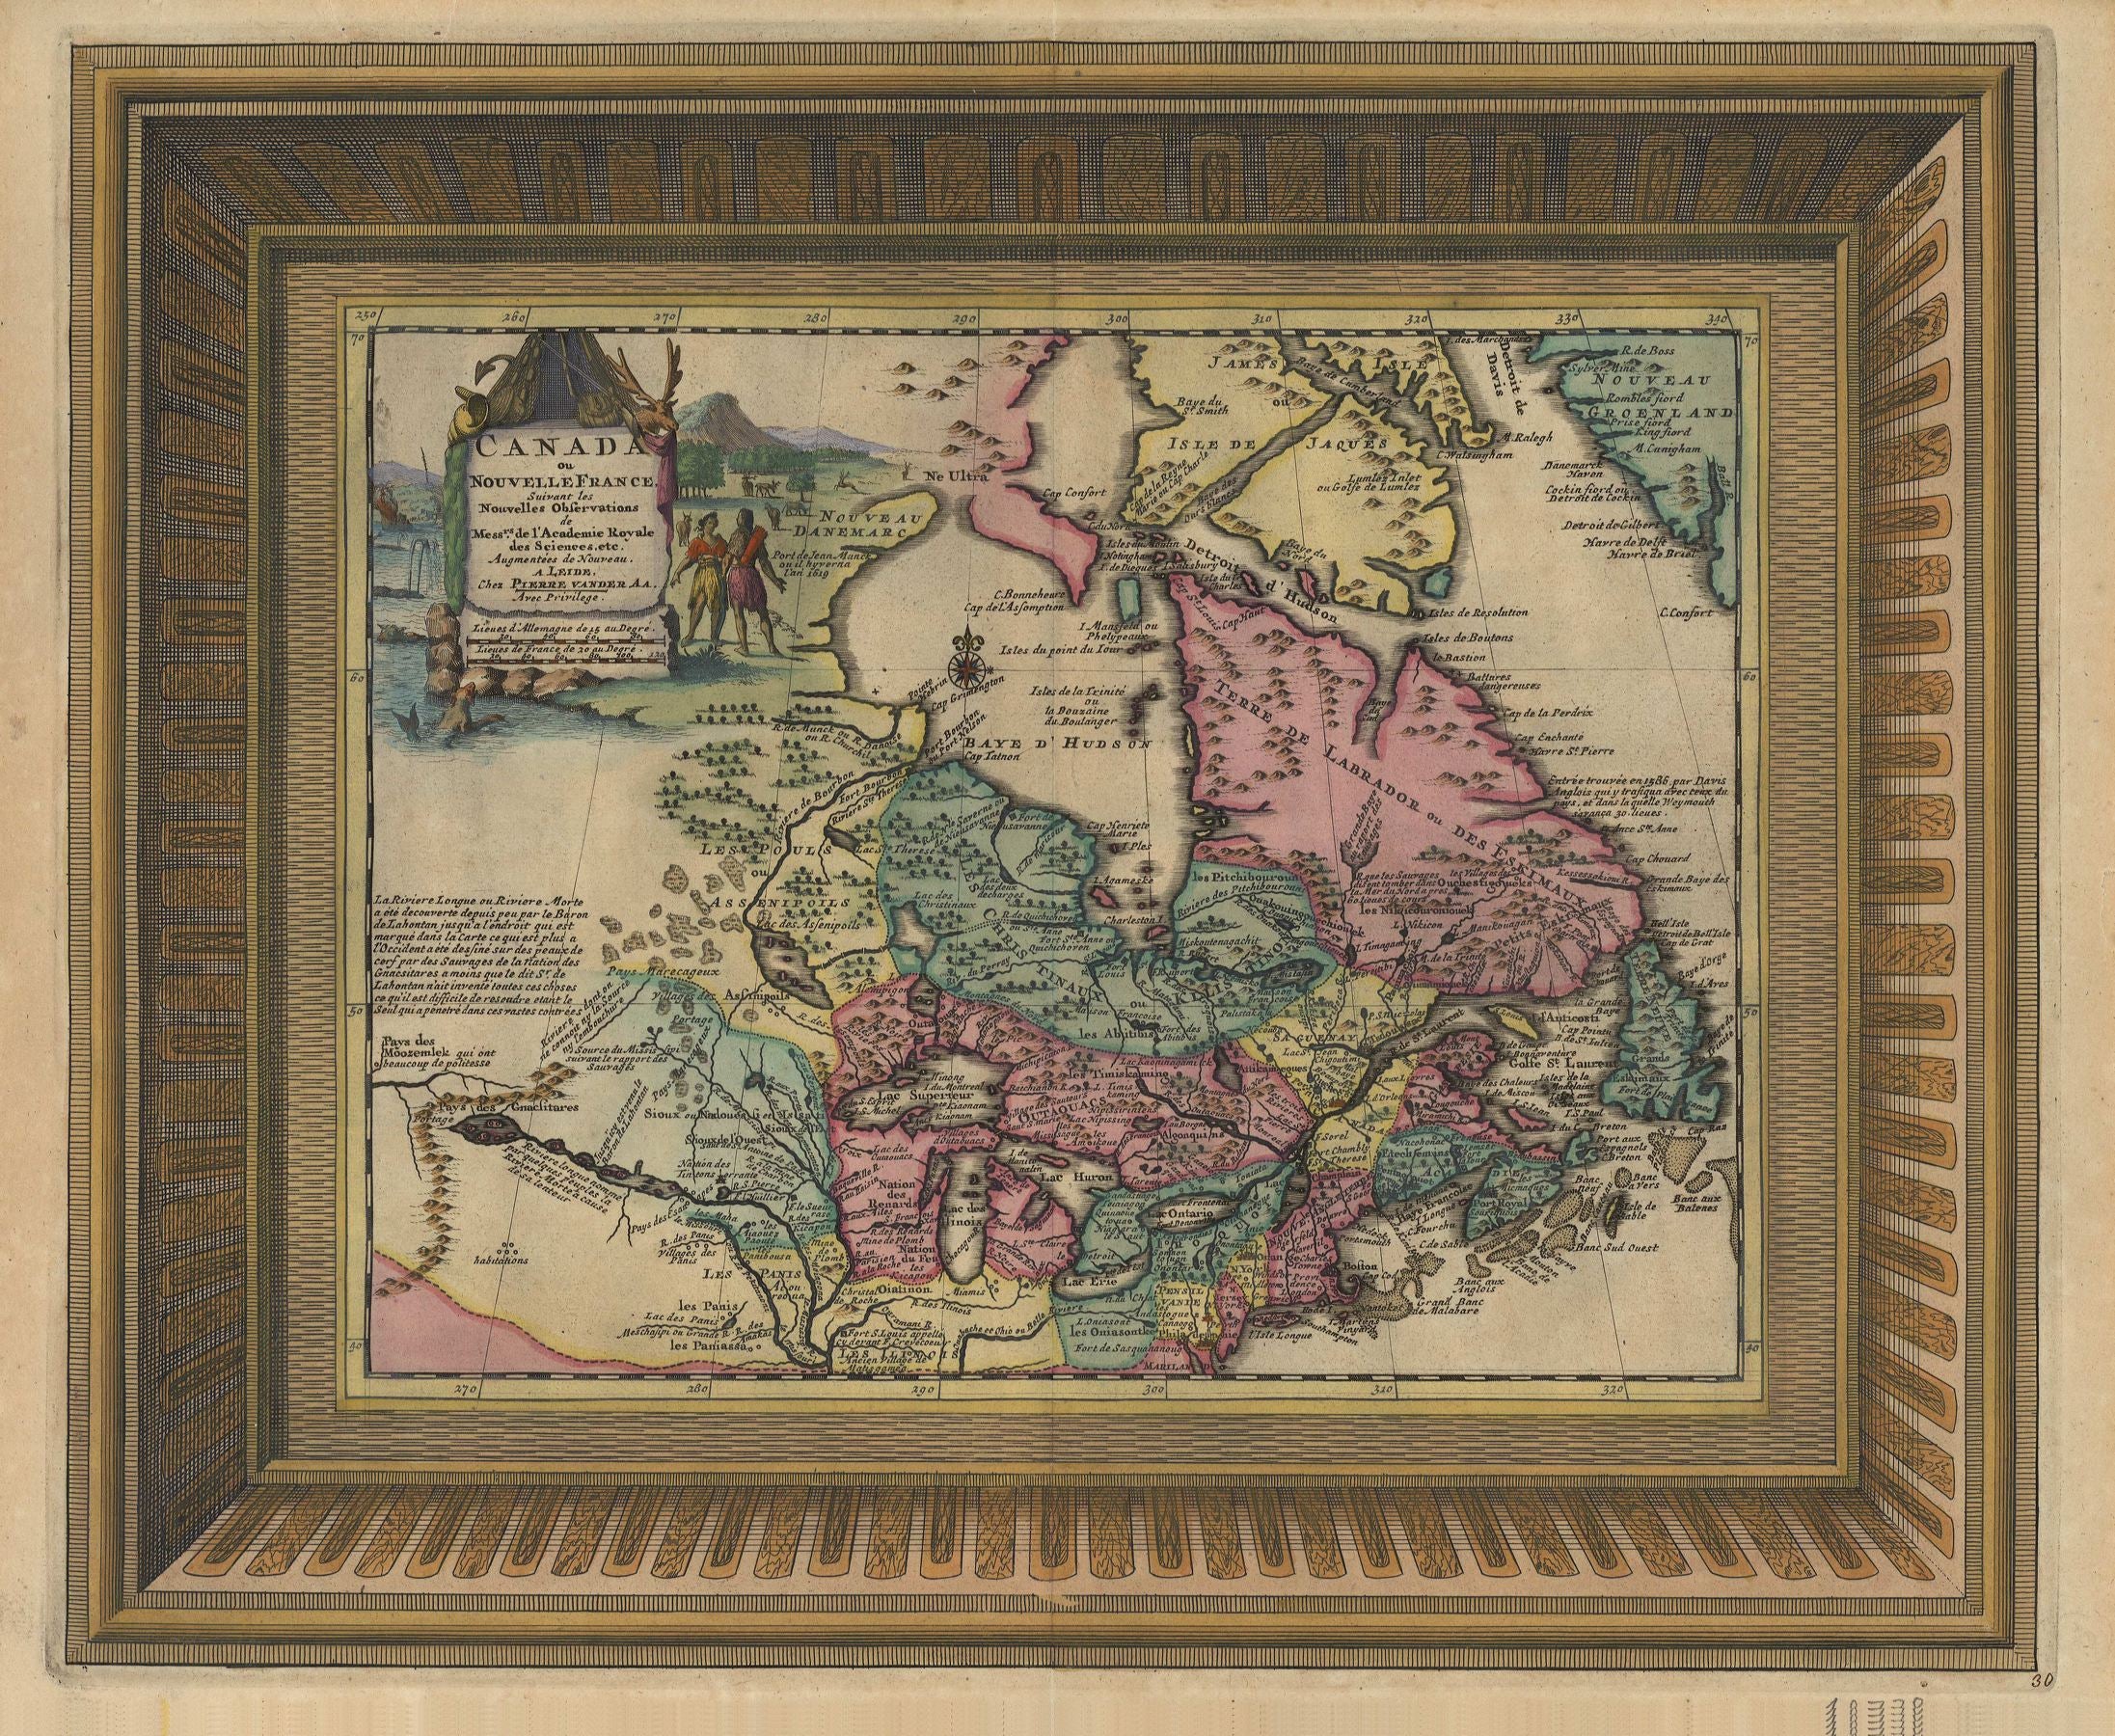 Kanada im Jahr 1729 von Pieter van der Aa